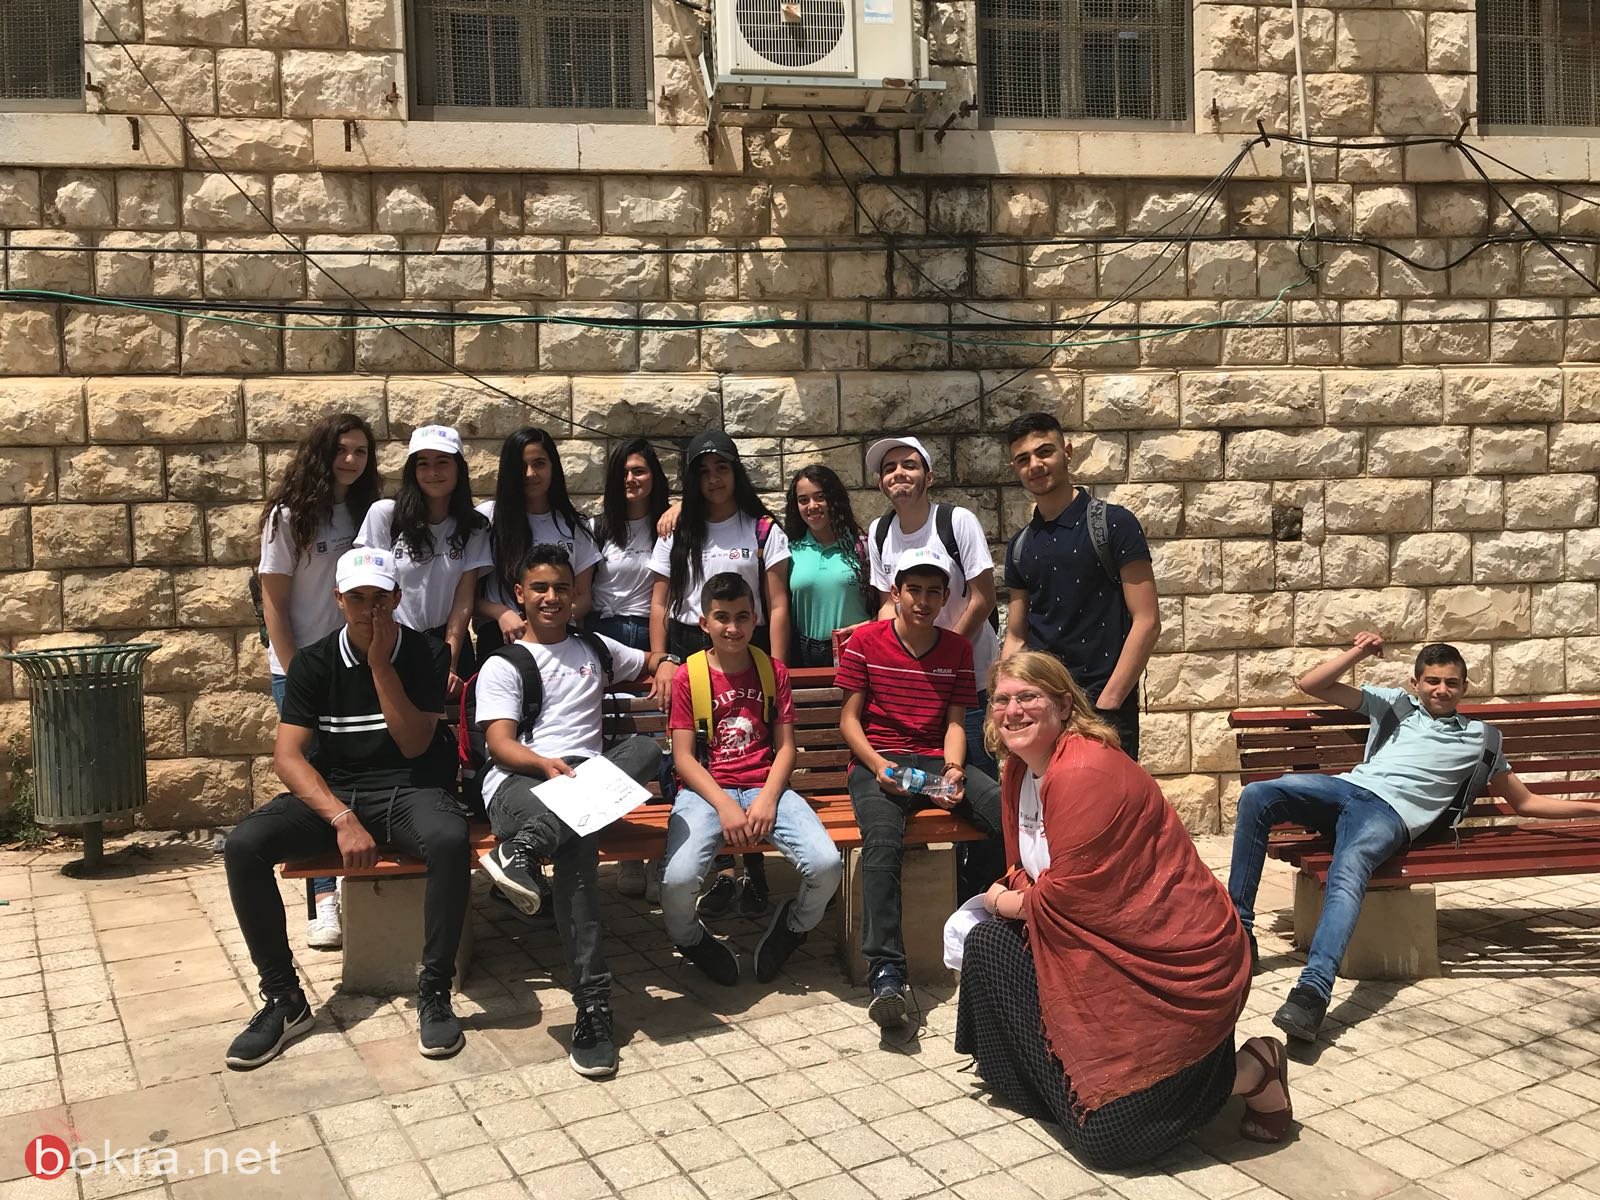 اعدادية الحلان- سخنين،ومطران الناصرة وتيخونت تل ابيب ضمن مشروع Tec4schools-40